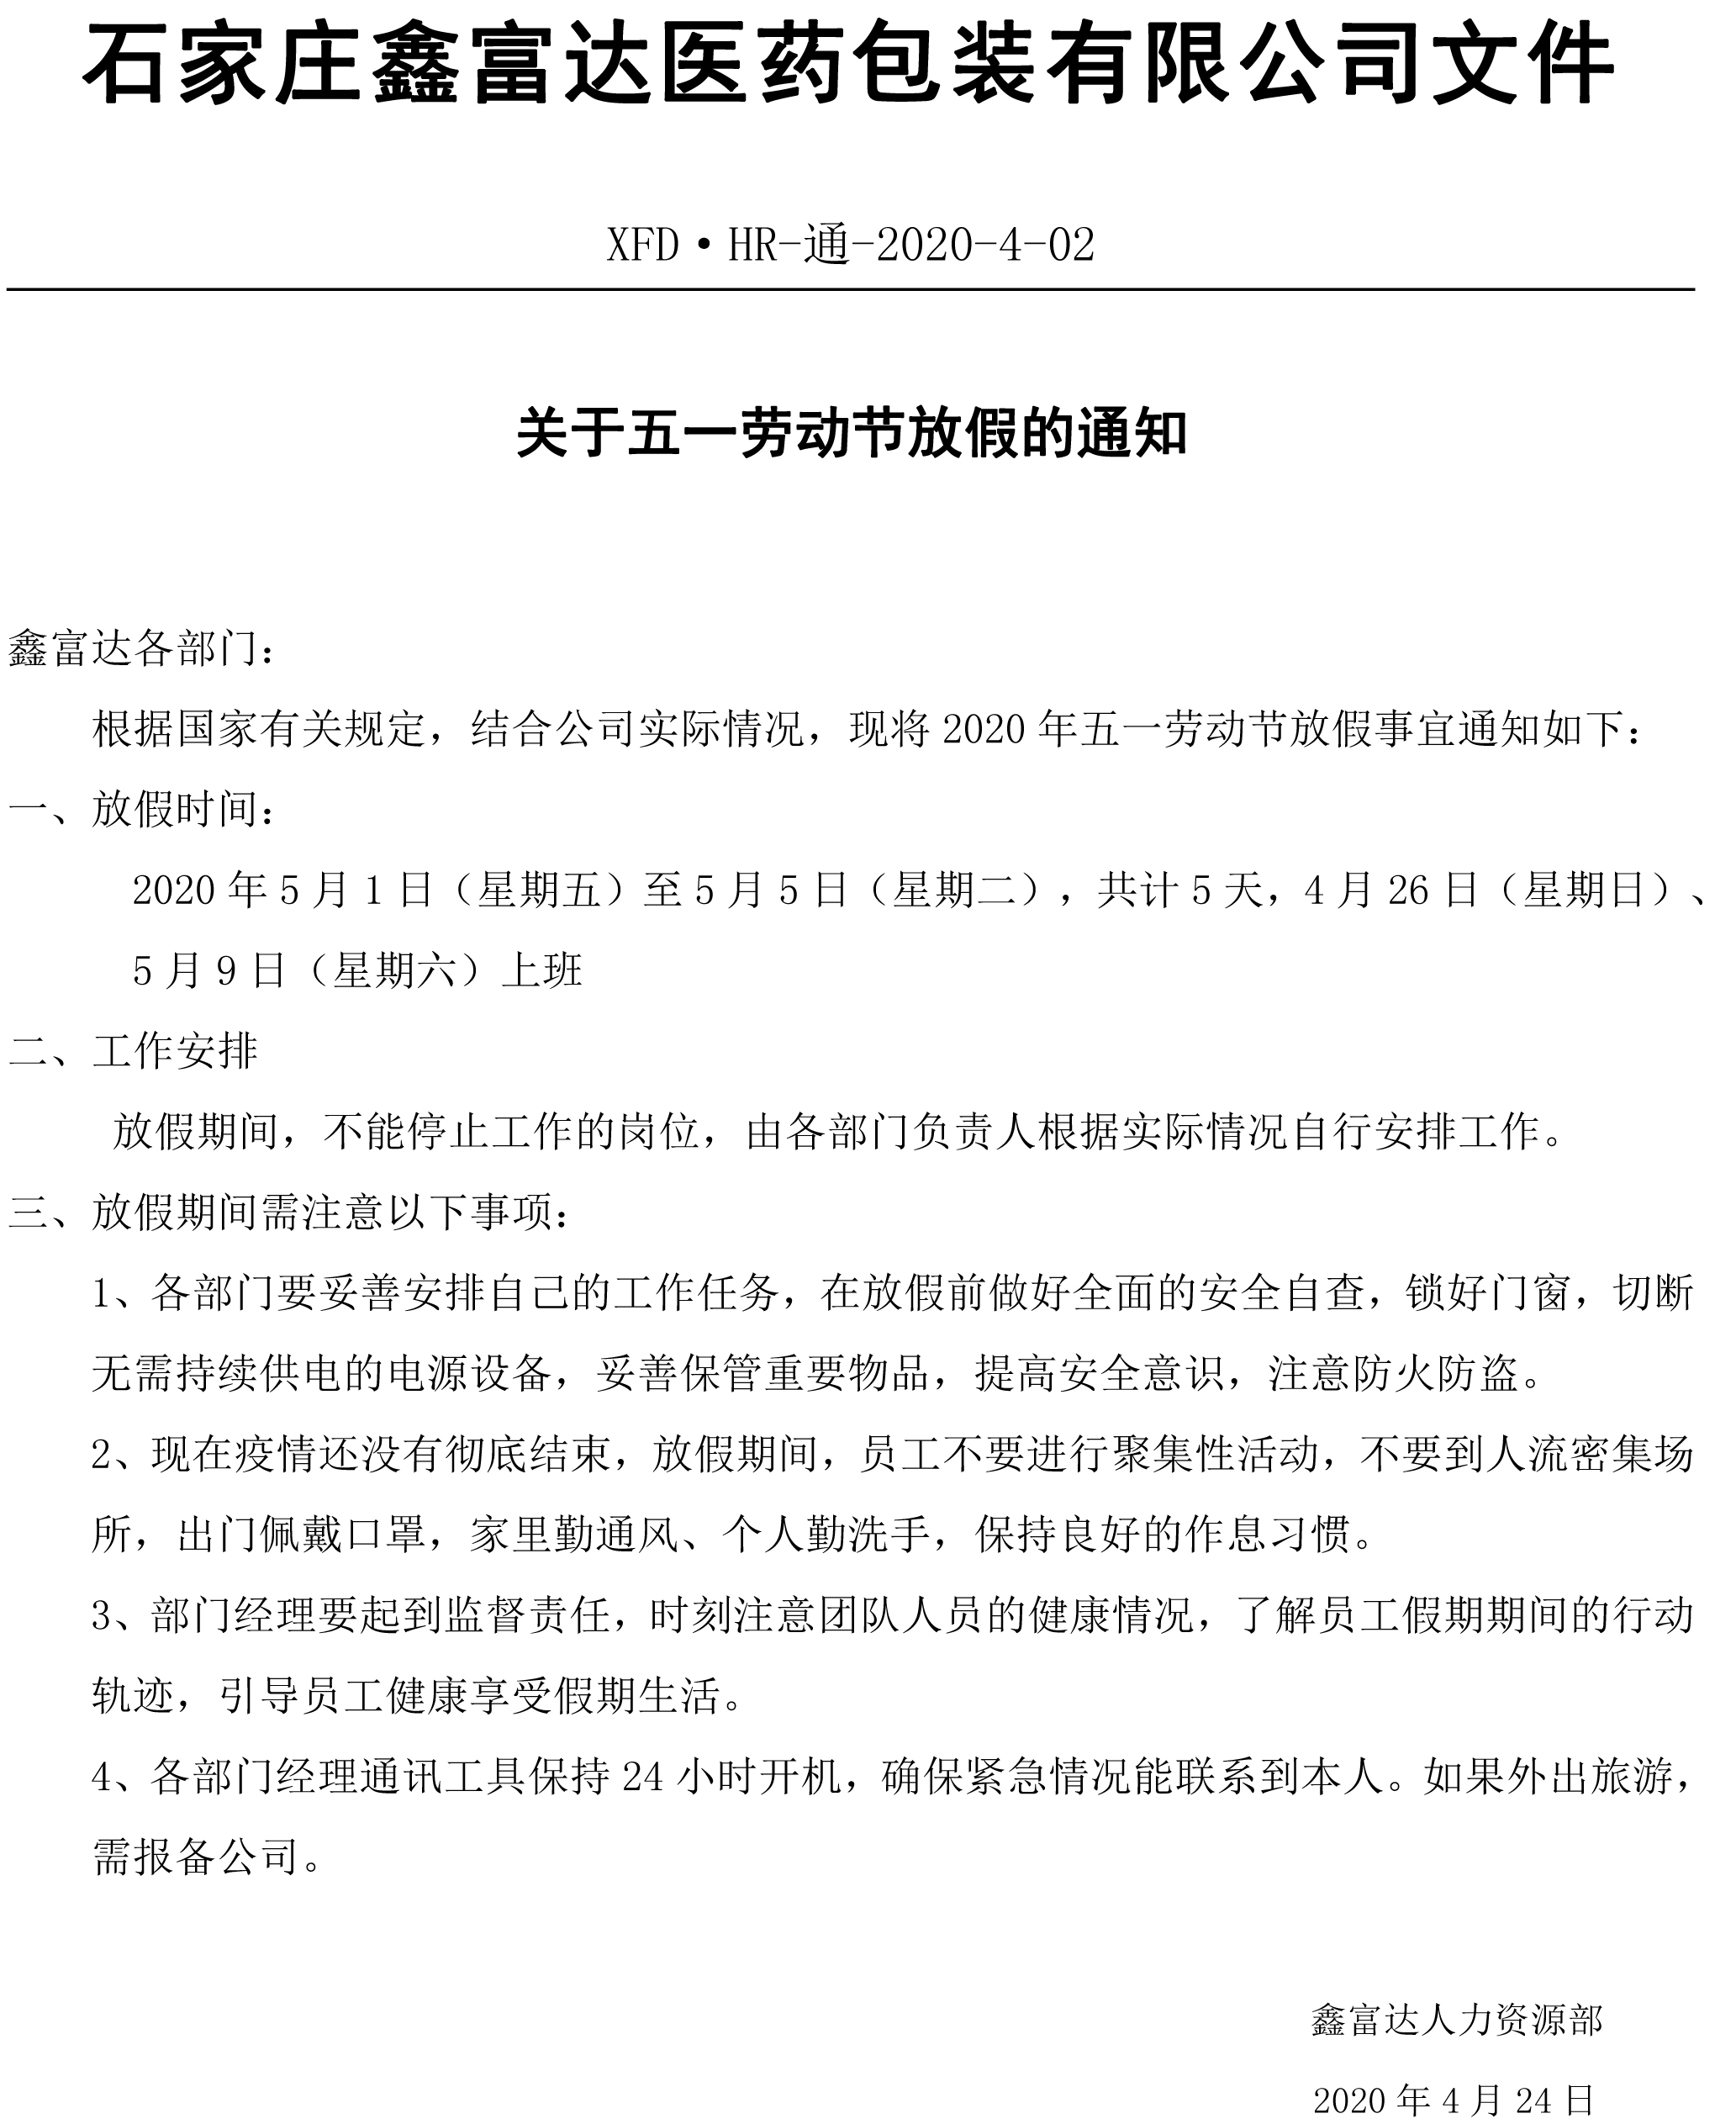 石家庄鑫富达医药包装有限公司关于五一劳动节放假的通知